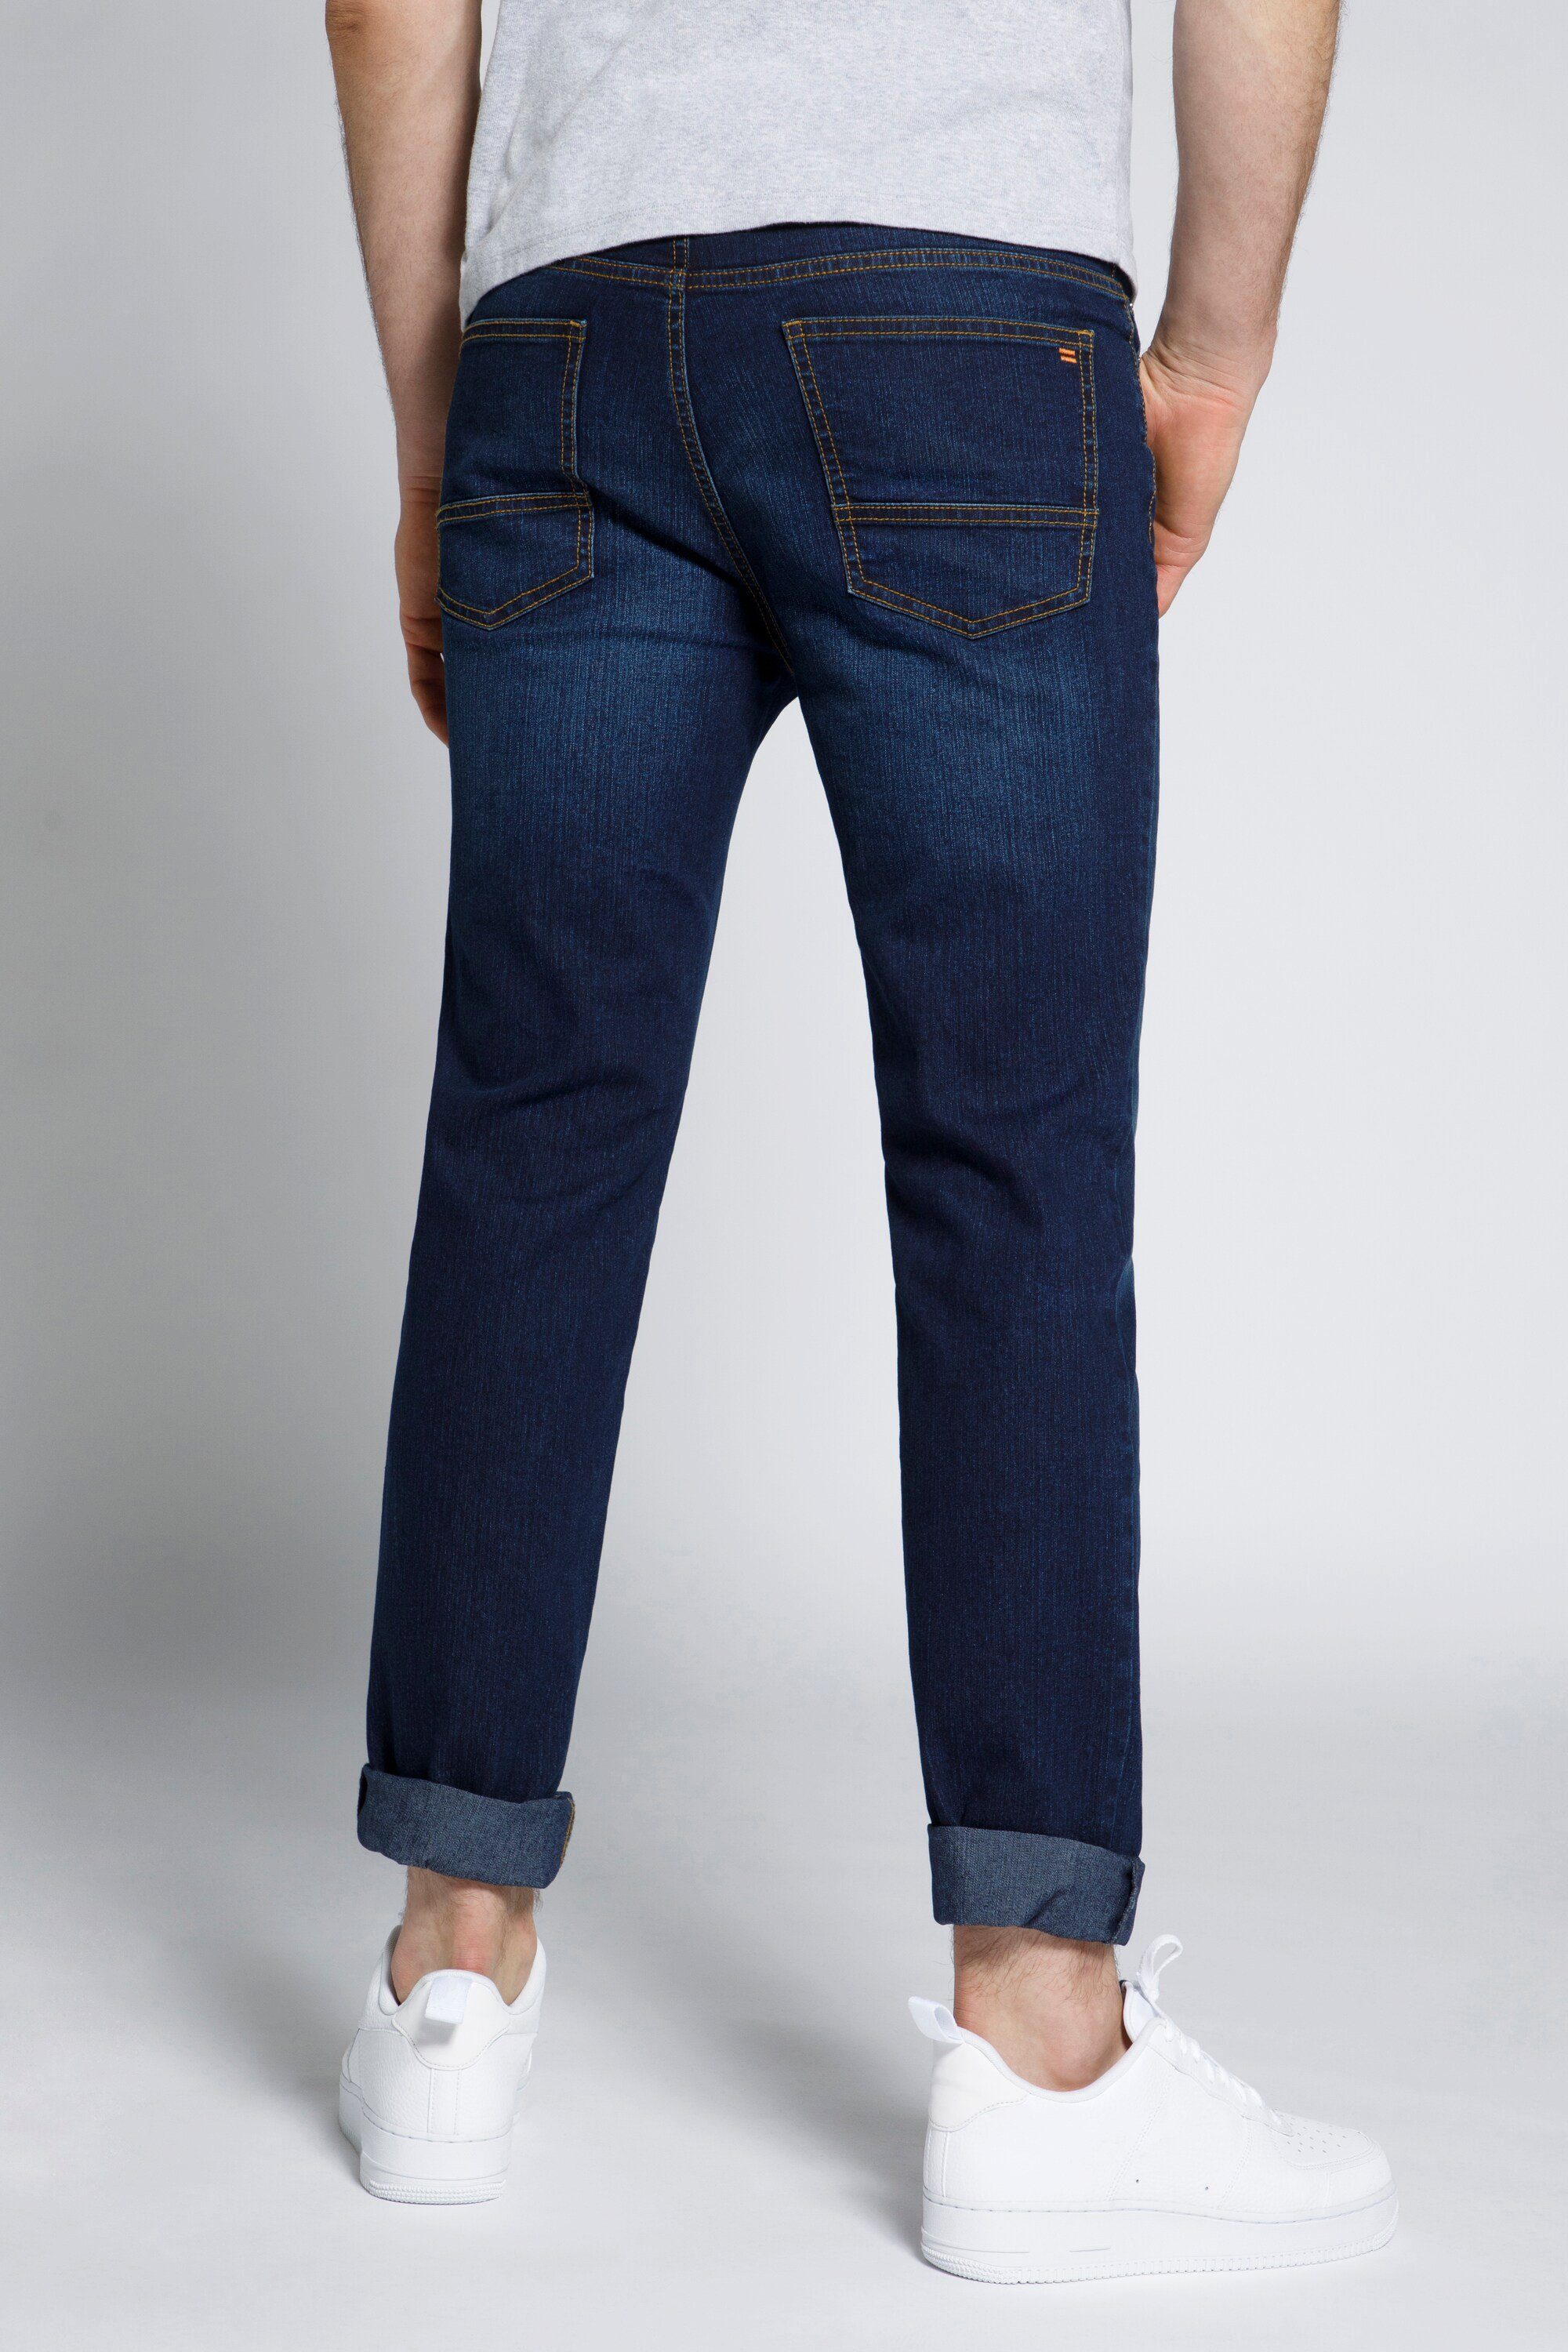 blue 5-Pocket-Jeans STHUGE Jeans Fit Modern denim STHUGE Herren dark